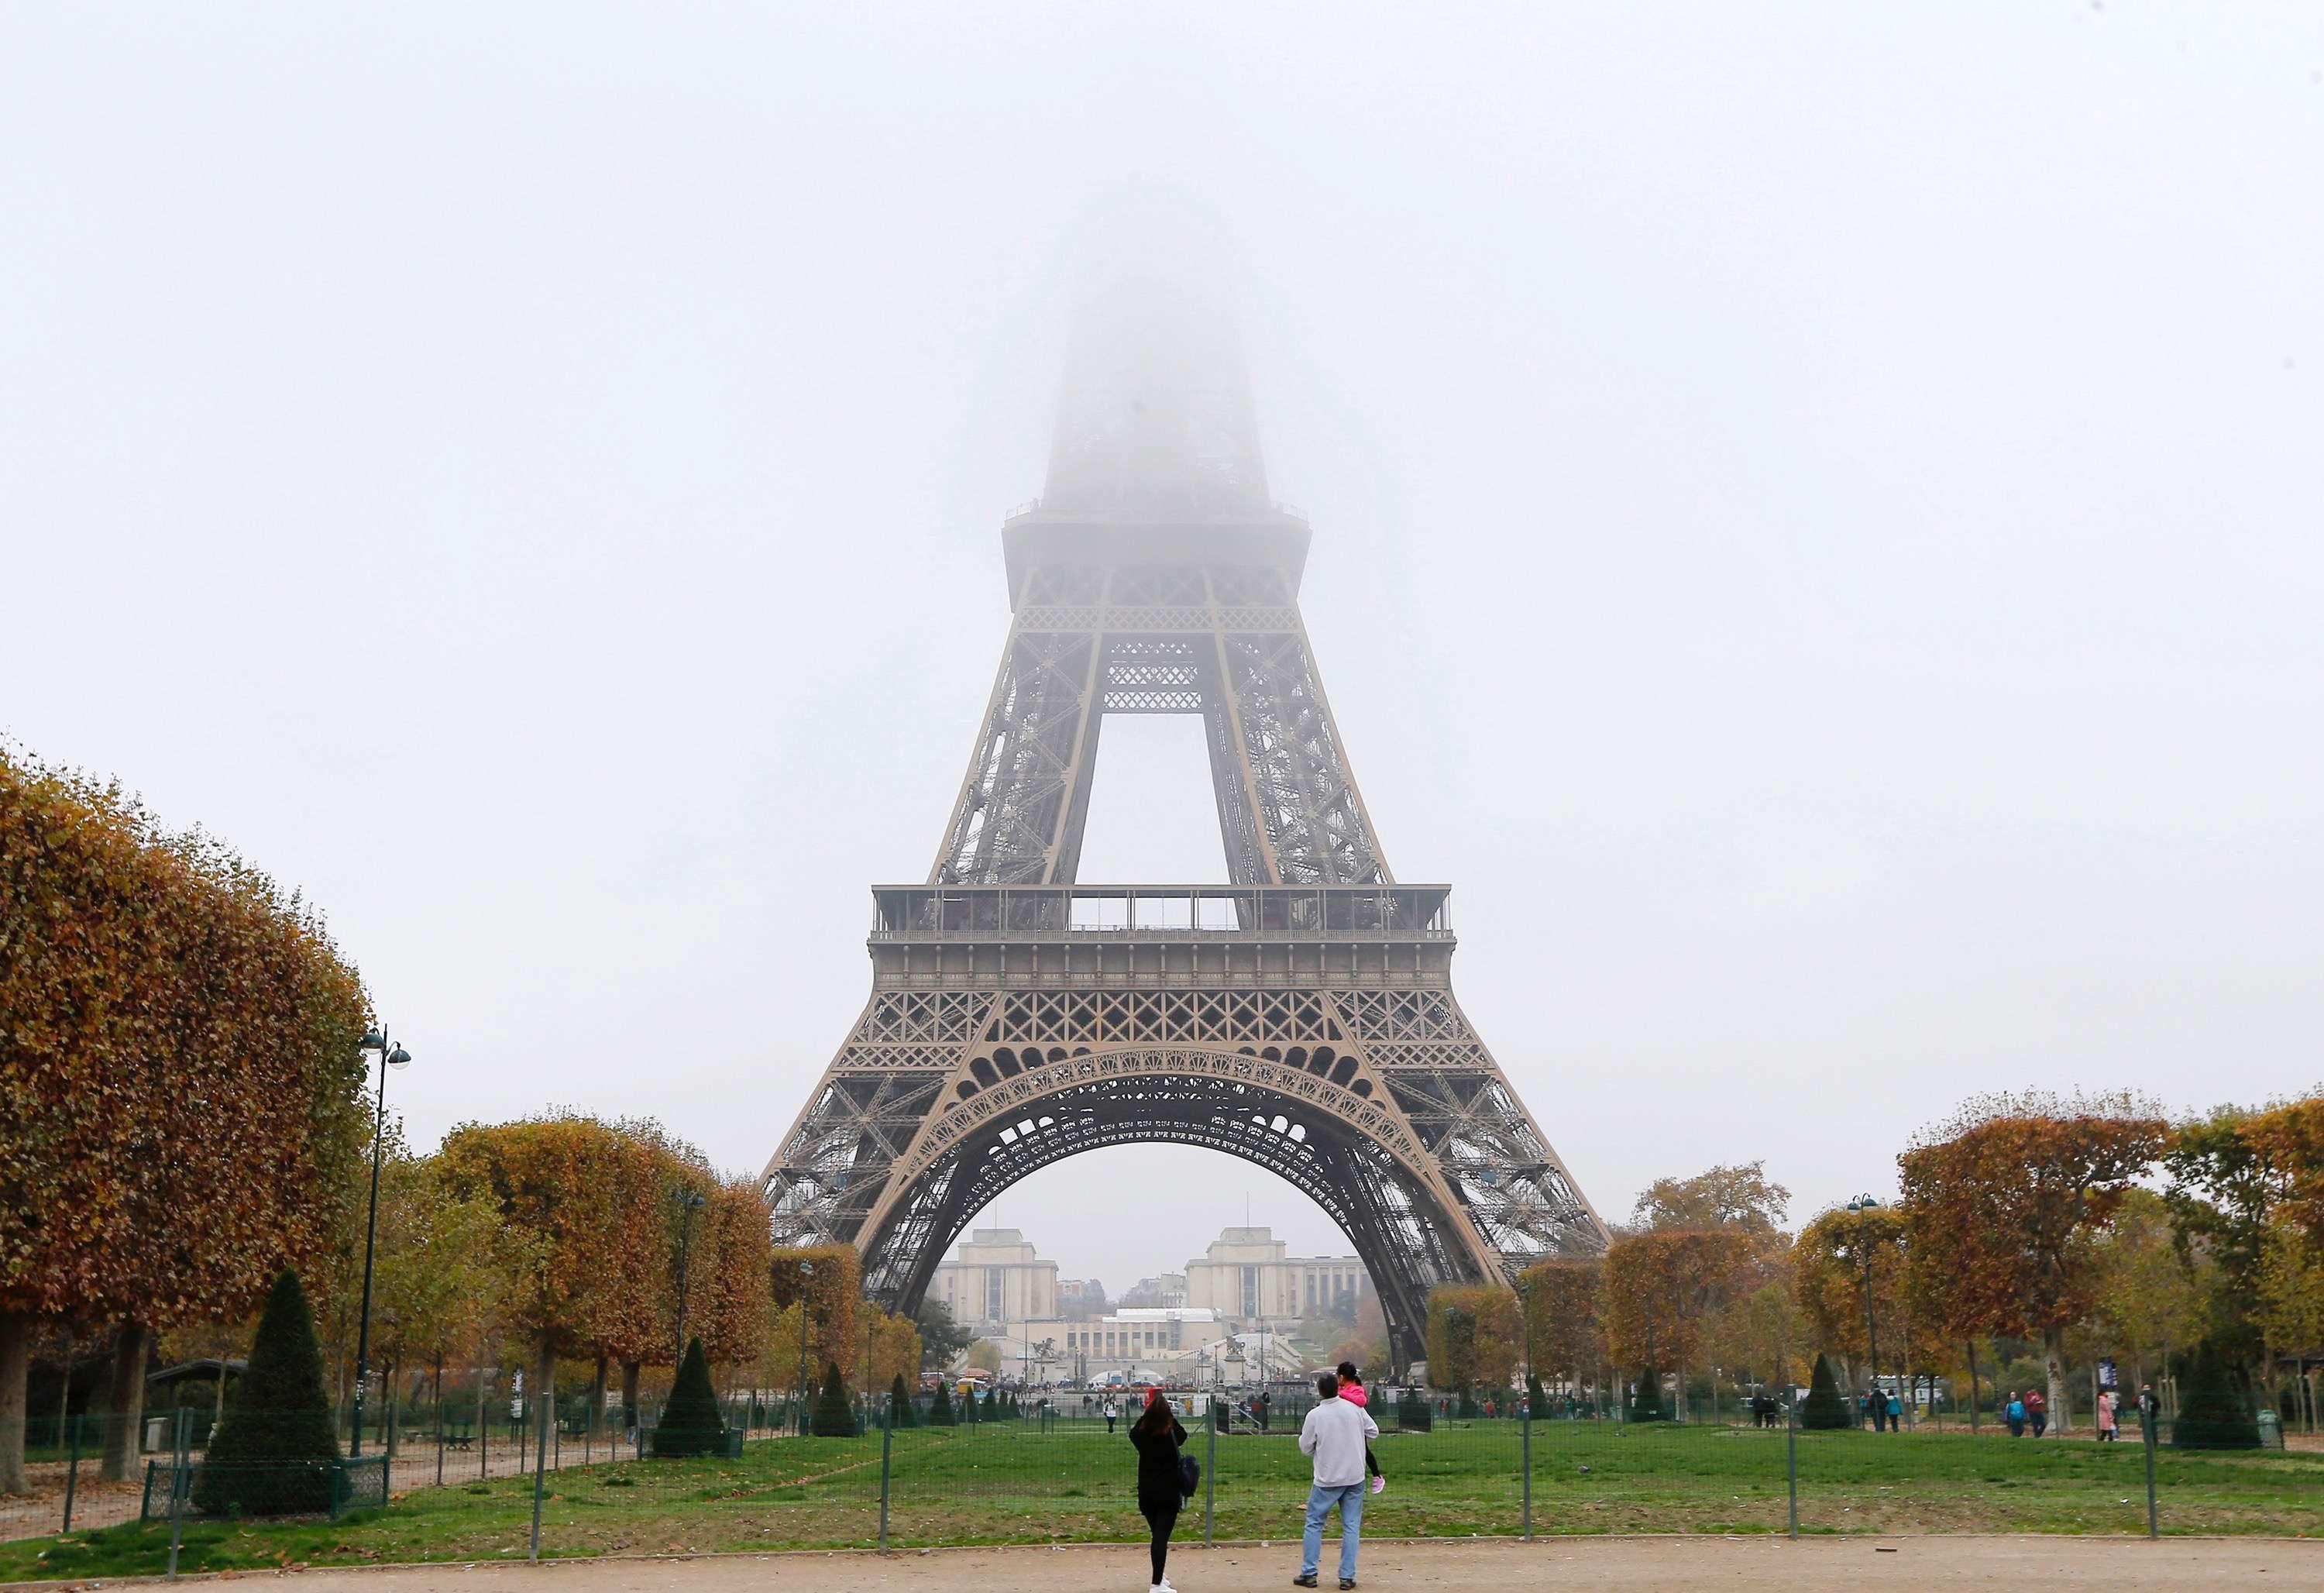 En måned før klimatopmødet begynder, slår parisiske myndigheder alarm og indfører titag for at undgå mere smog i storbyen. Danske byer slår også klima-alarm og tager til Paris for at påvirke stats- og regeringslederne ved COP21. Foto: Jacques Brinon / AP / Polfoto